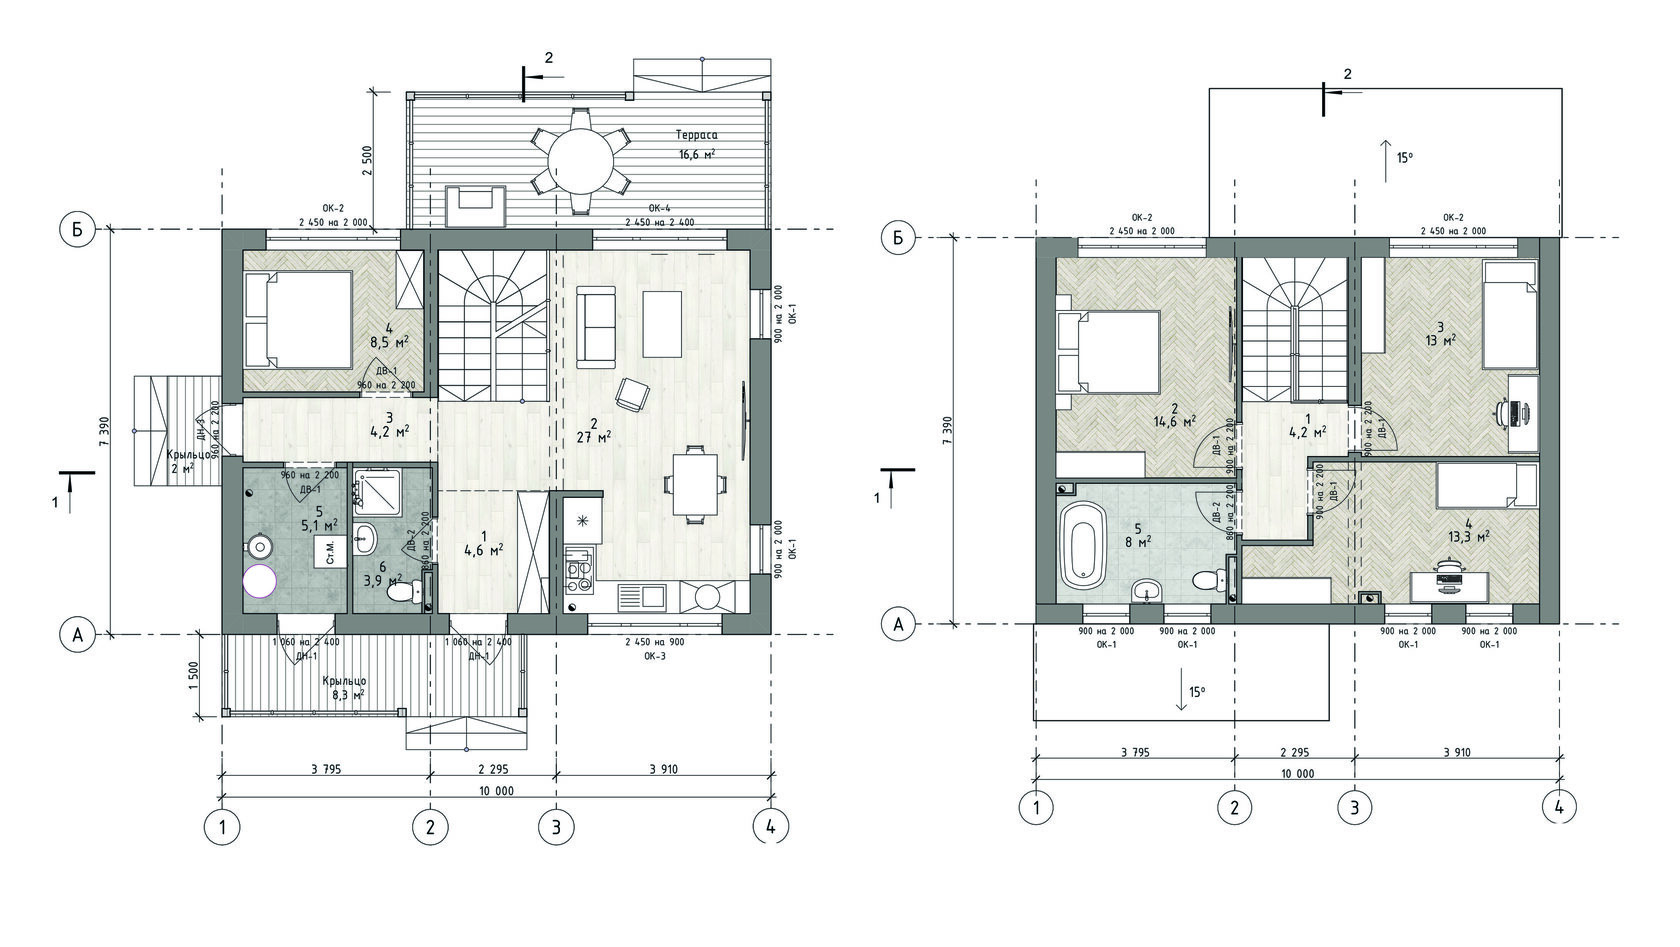 Планировка дома двухэтажного с 4 спальнями